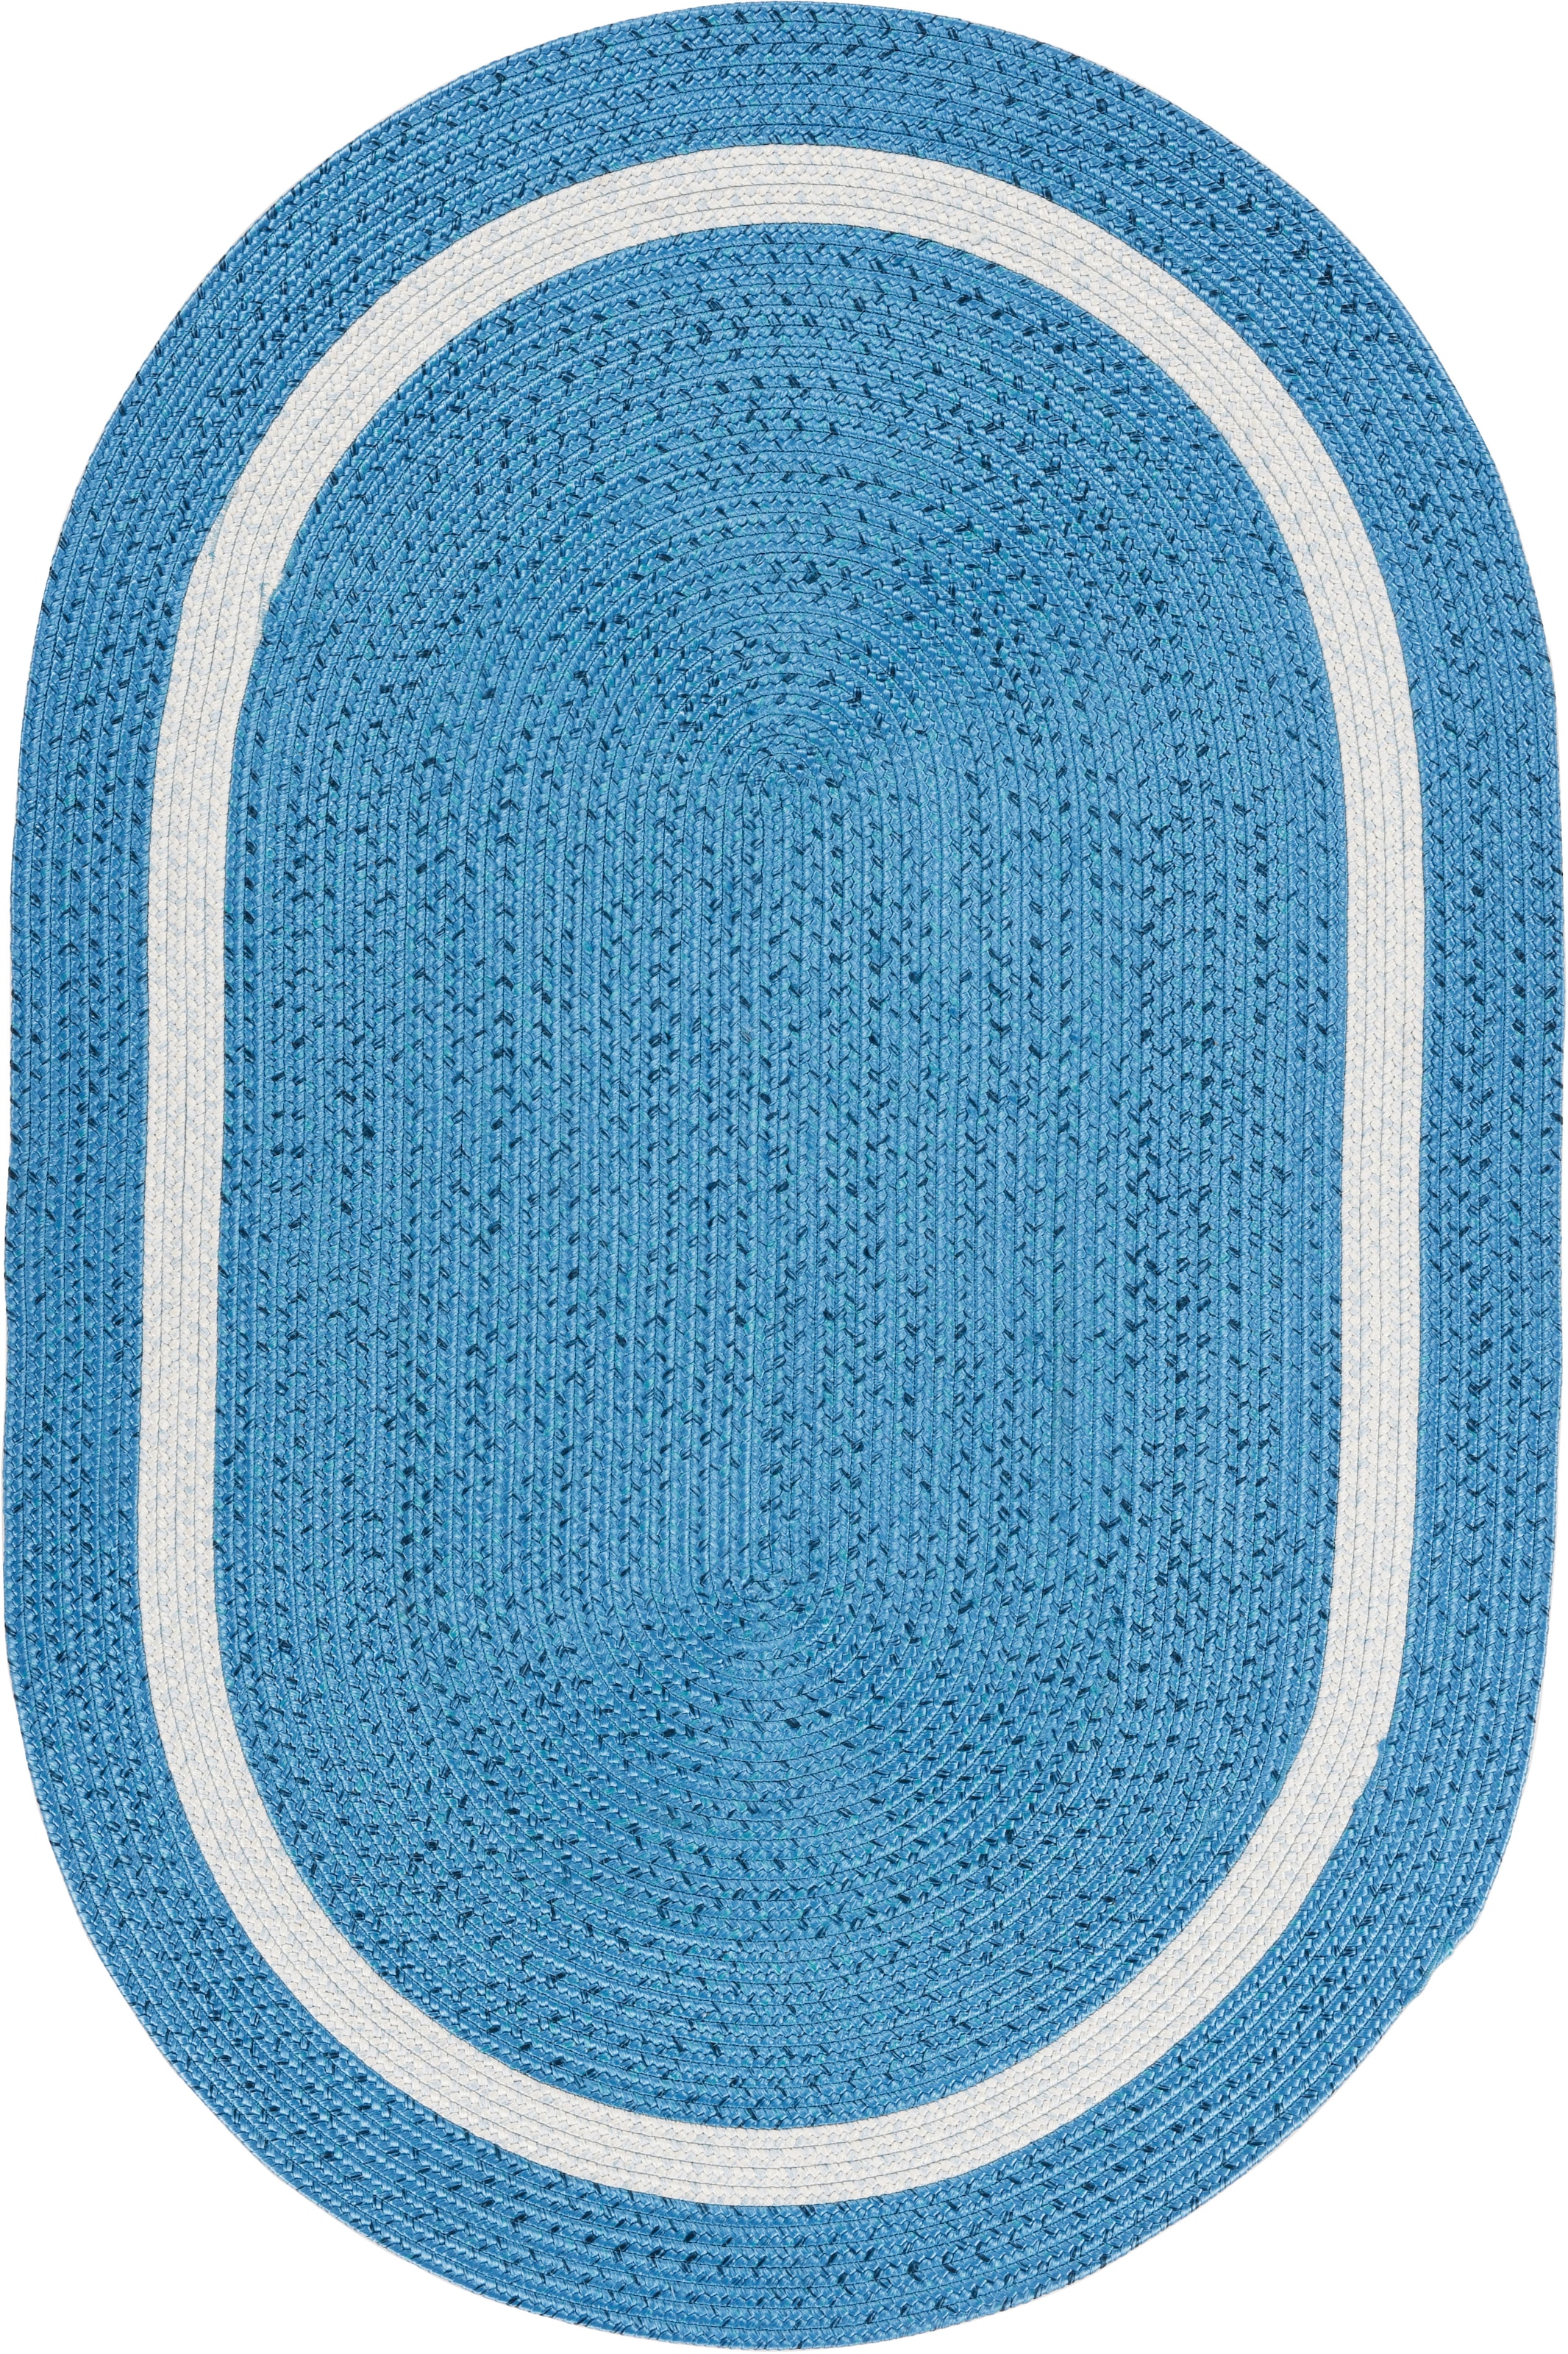 Gino Falcone Teppich »Benito«, oval, Flachgewebe, Uni-Farben, mit Bordüre,  In- und Outdoor geeignet kaufen